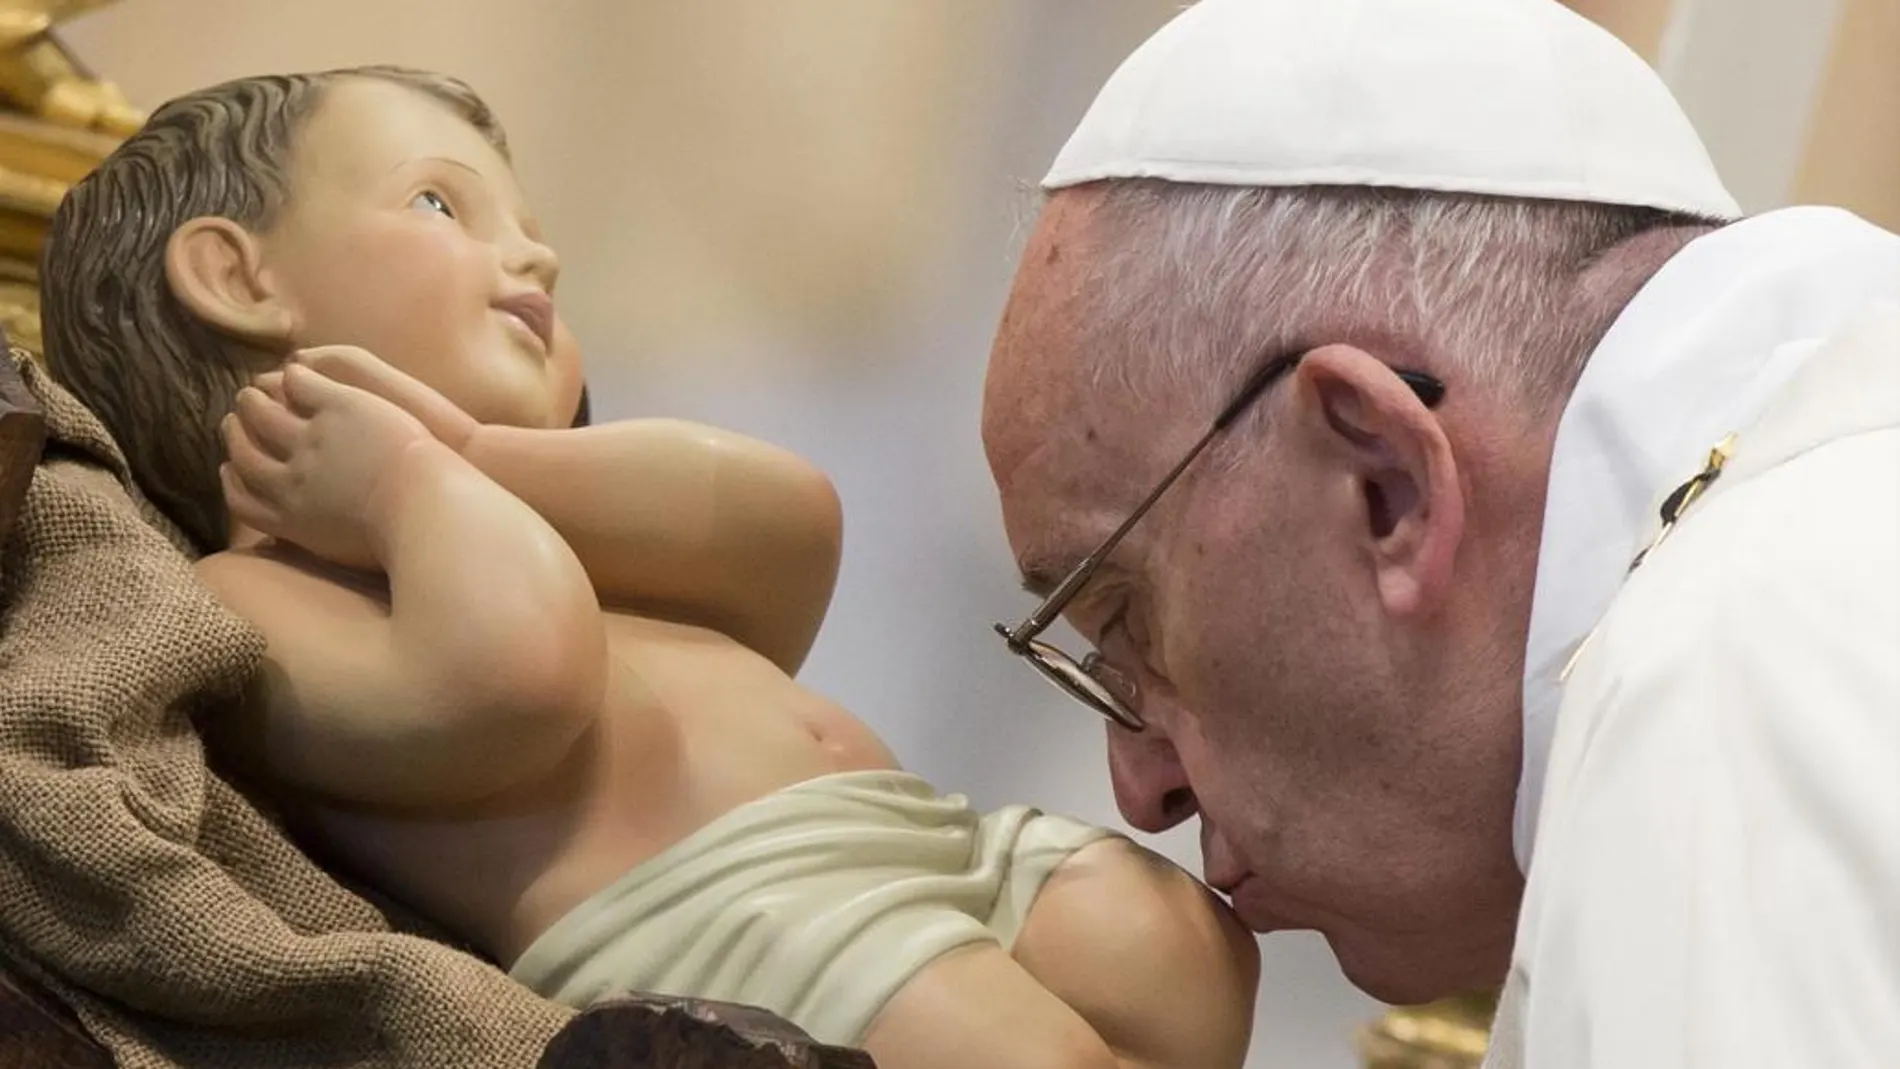 El Papa Francisco besa una figura del niño Jesús antes de presidir la Santa Misa